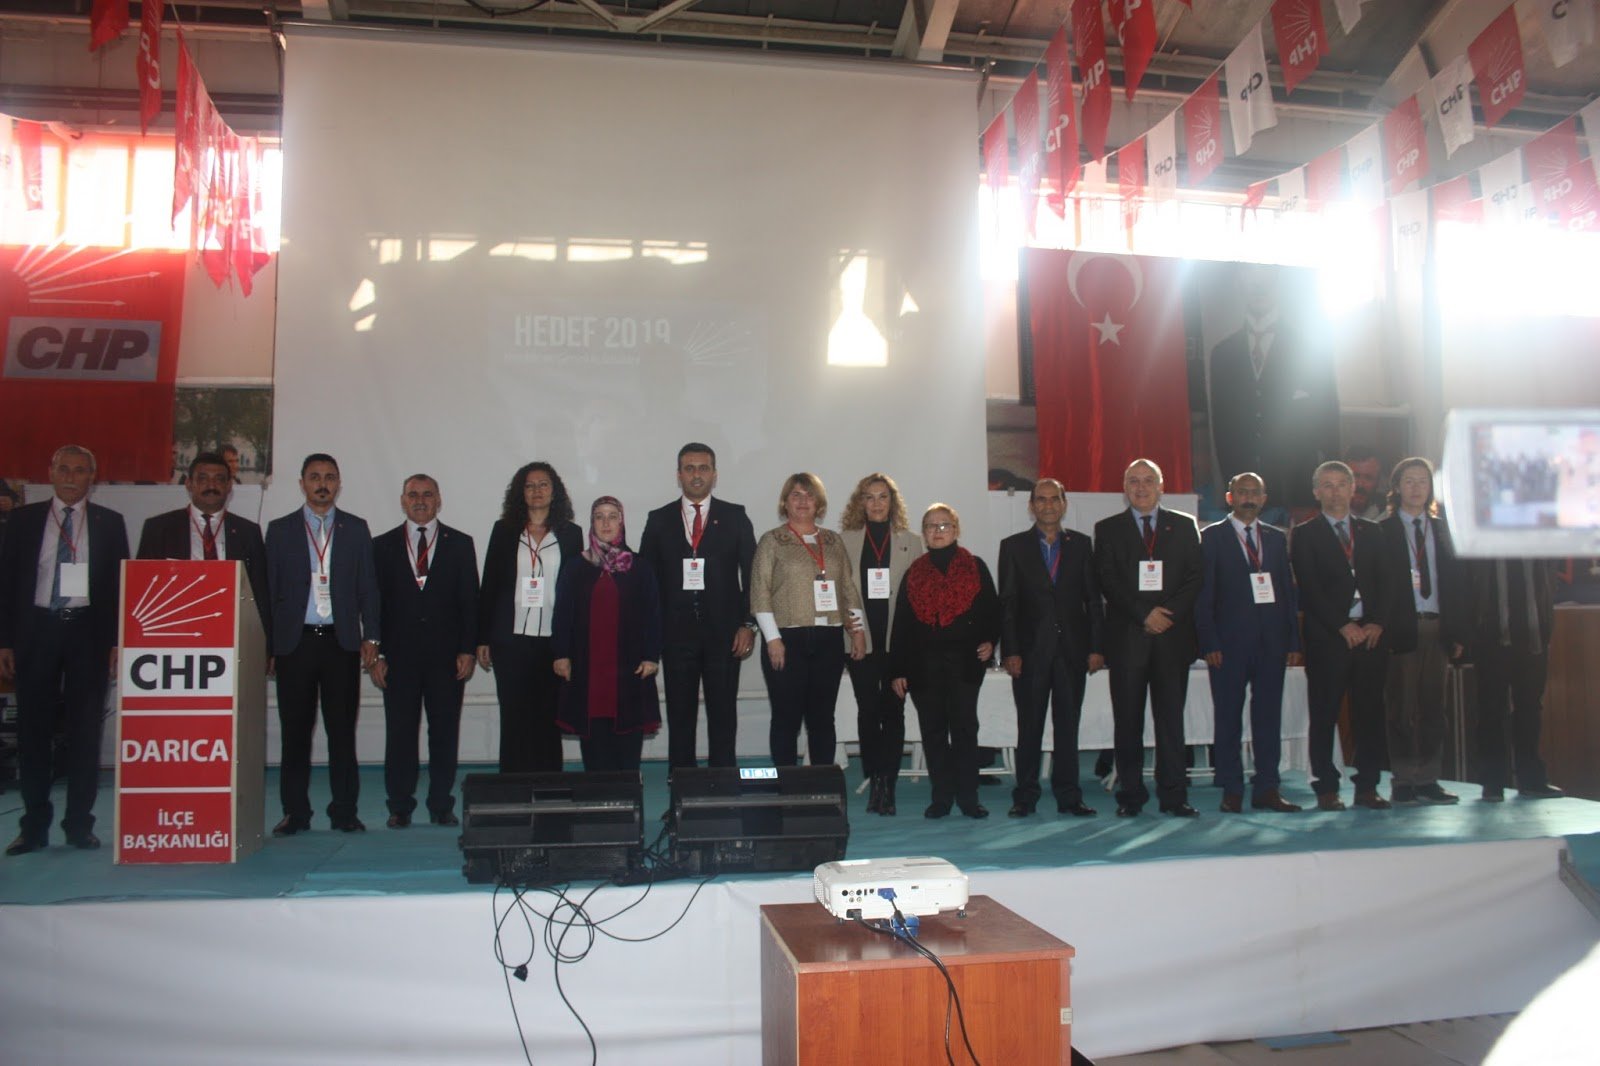 CHP Darıca'da Yönetim yarı yarıya yenilendi